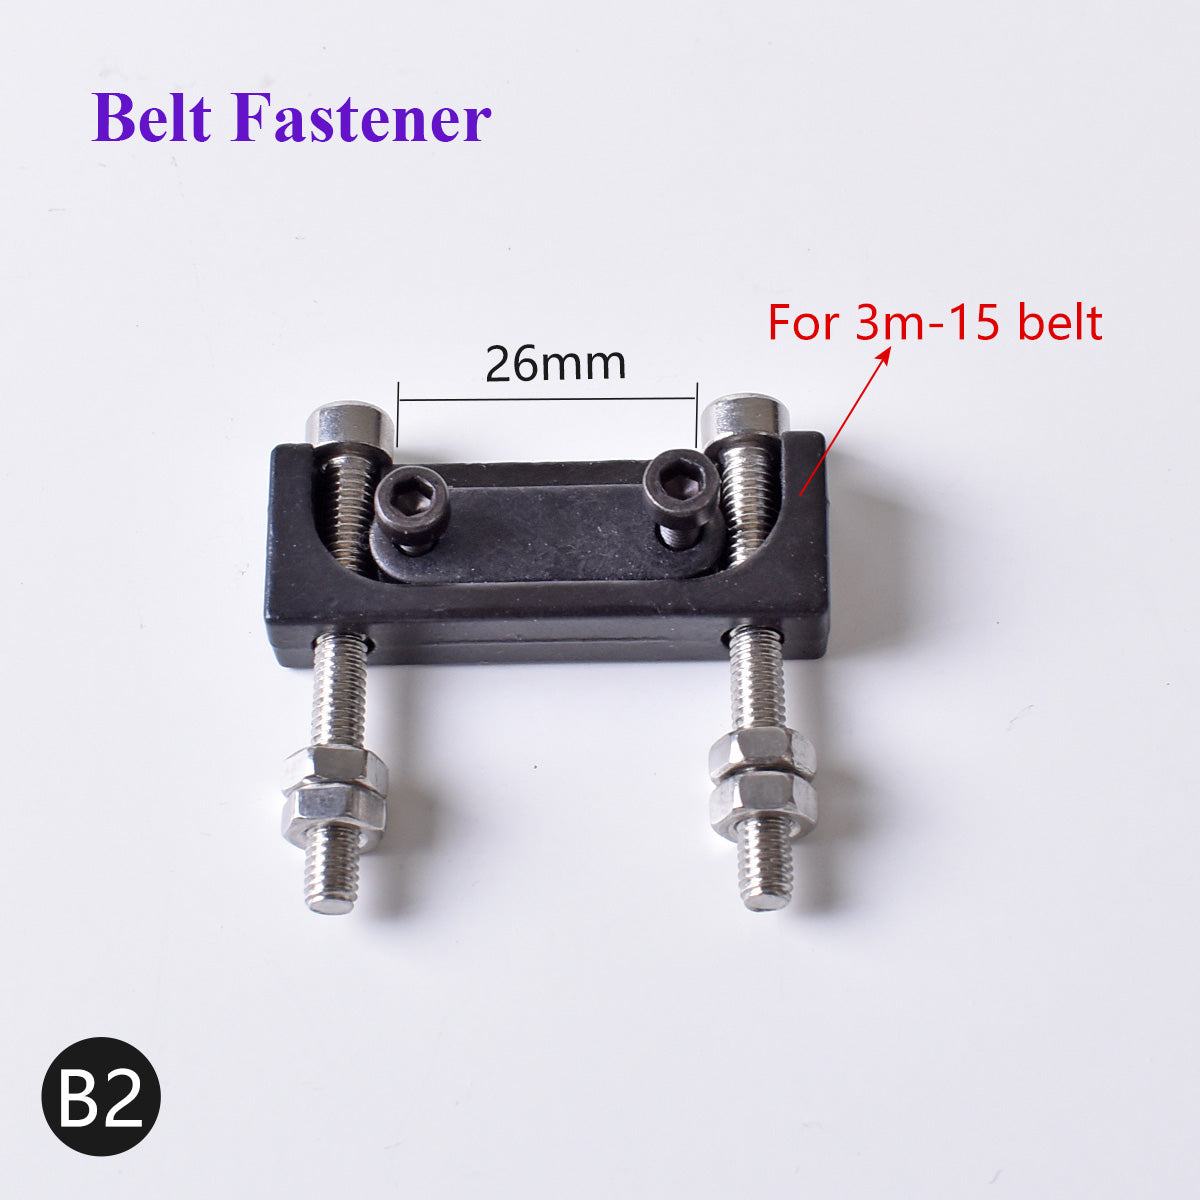 Timing Belt Fastener & 57 Stepper Motor Base Bracket & Connecting Plate Installation Board For DIY CNC CO2 Laser Metal Machine